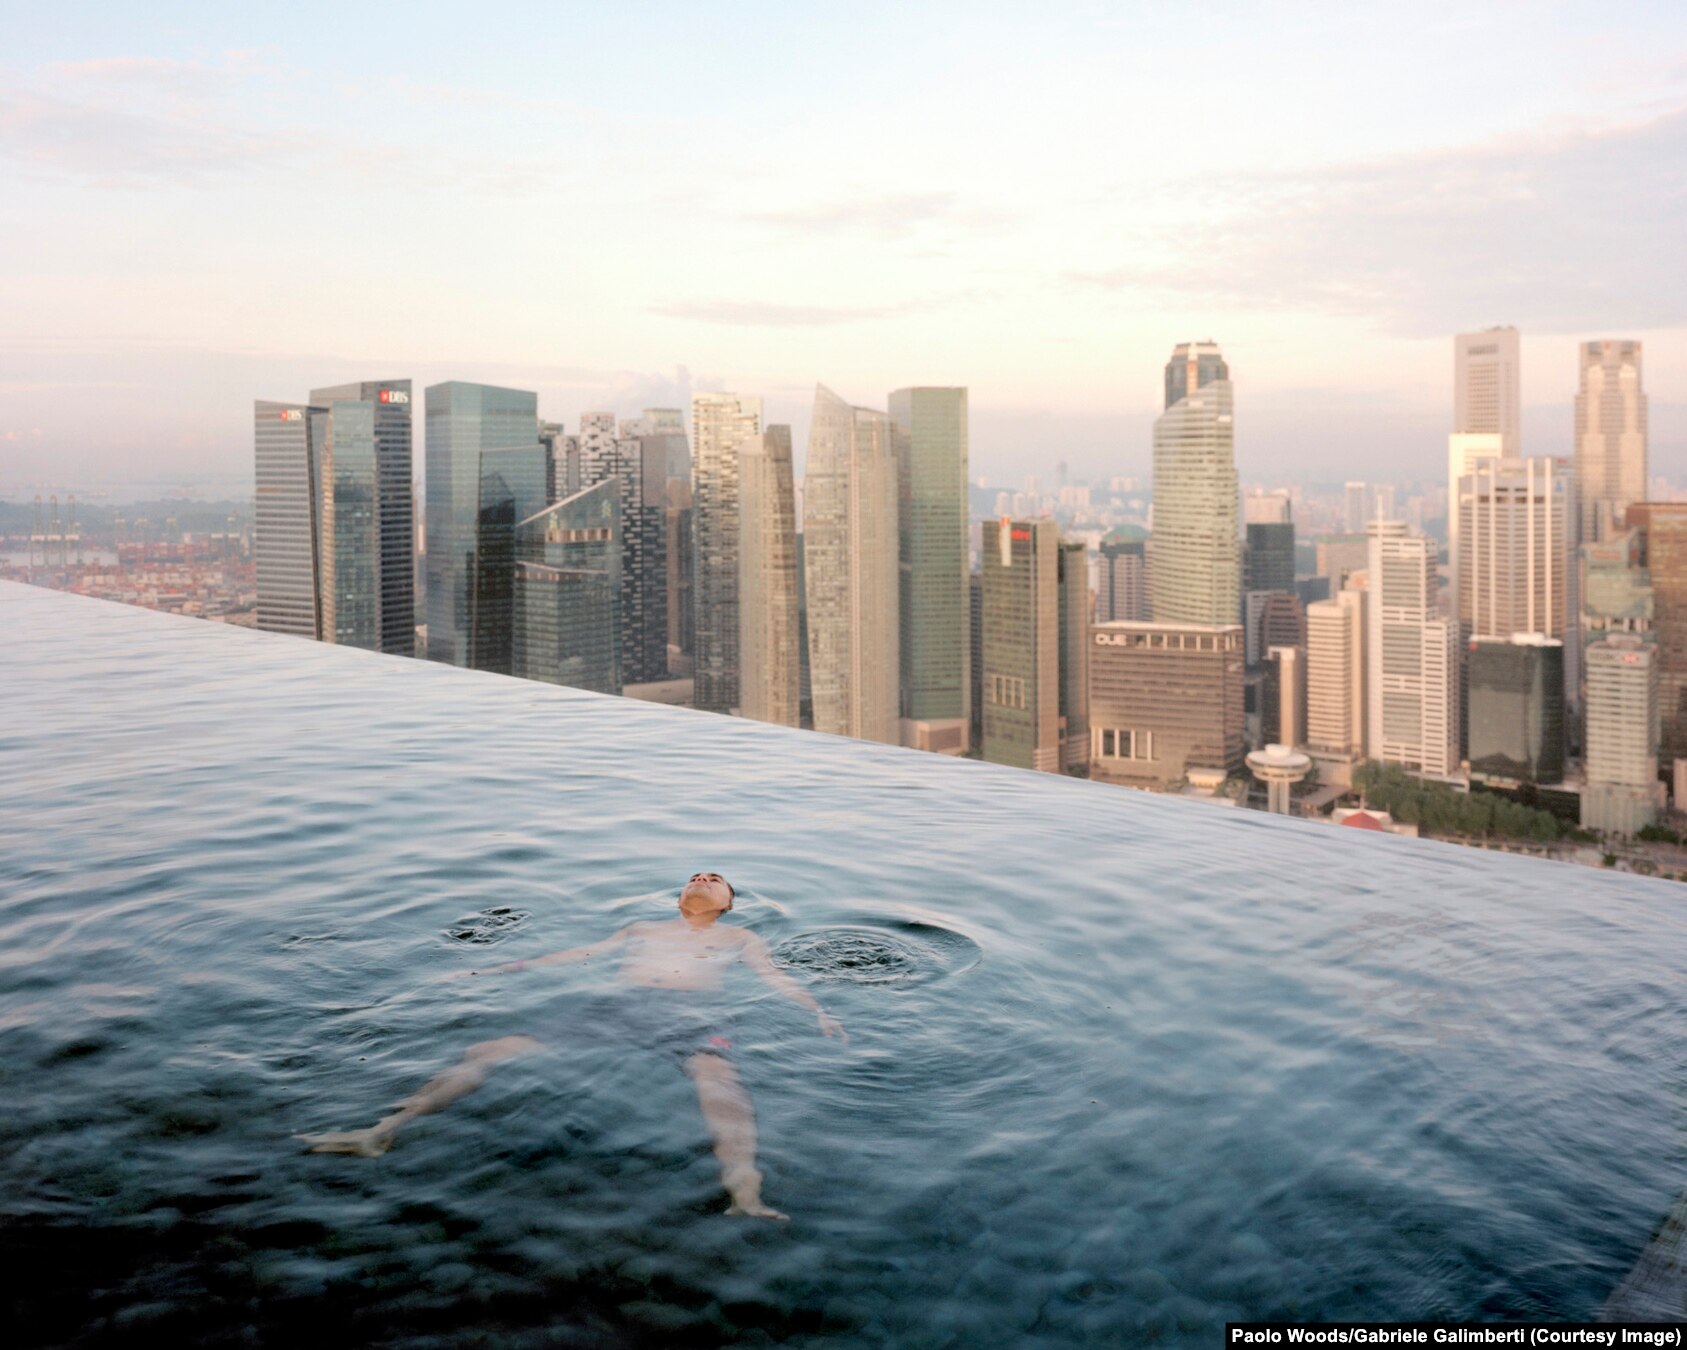 Një burrë duke notuar në një pishinë në katin e 57-të në hotelin Marina Bay Sands. Në prapavijë shihet objekti i qendrës financiare të Singaporit.